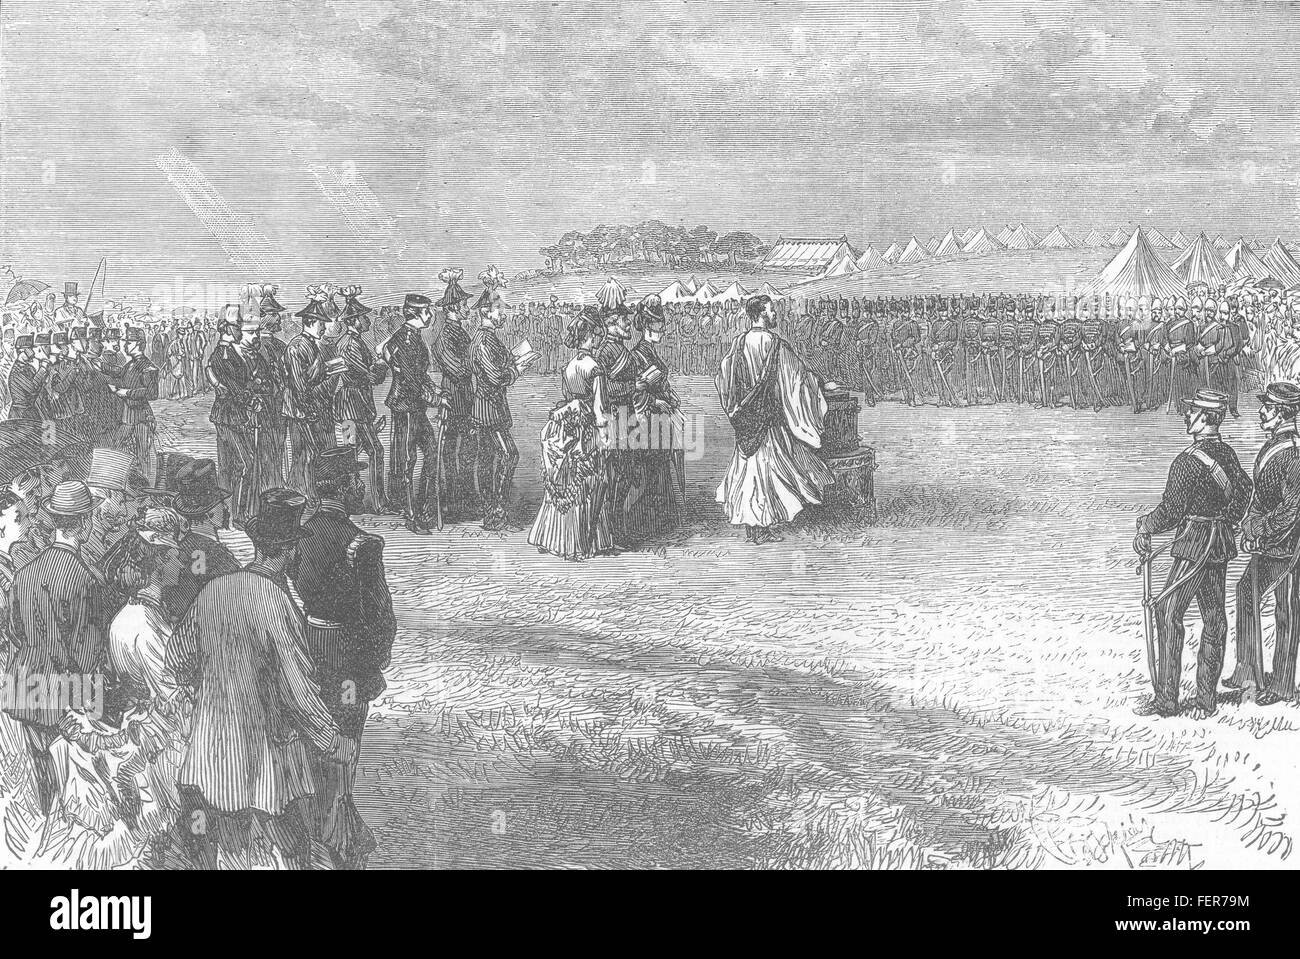 Il Dorset campagna d'Autunno divino servizio gara Camp, Blandford 1872. Illustrated London News Foto Stock